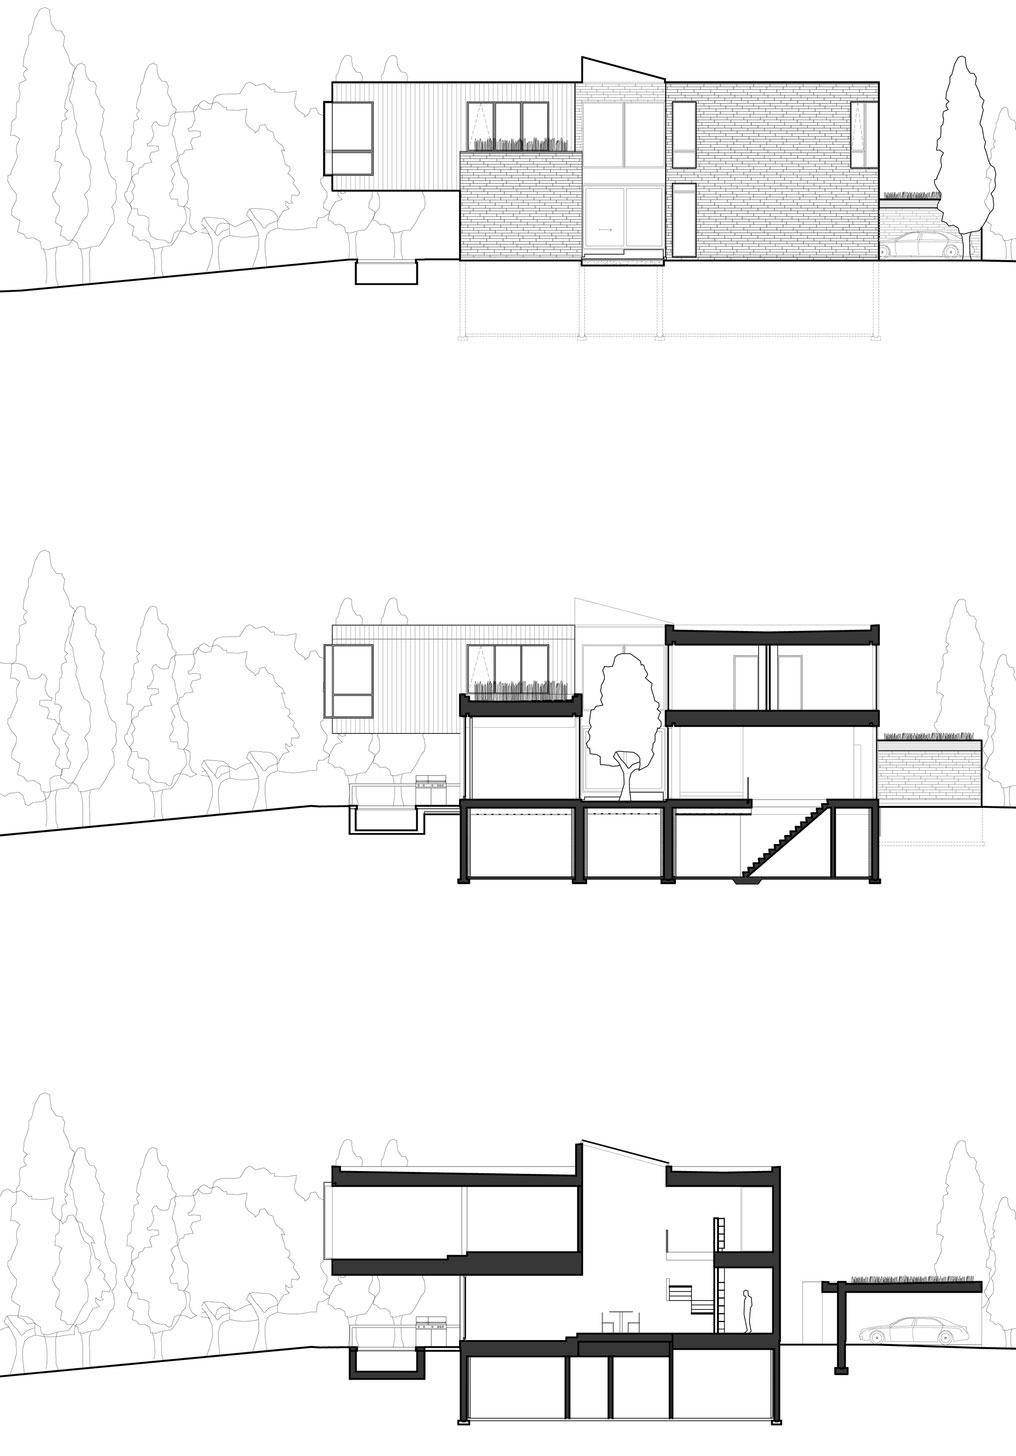 Элегантность без особых усилий: cedarvale ravine house – дом-ущелье от drew mandel architects, торонто, канада